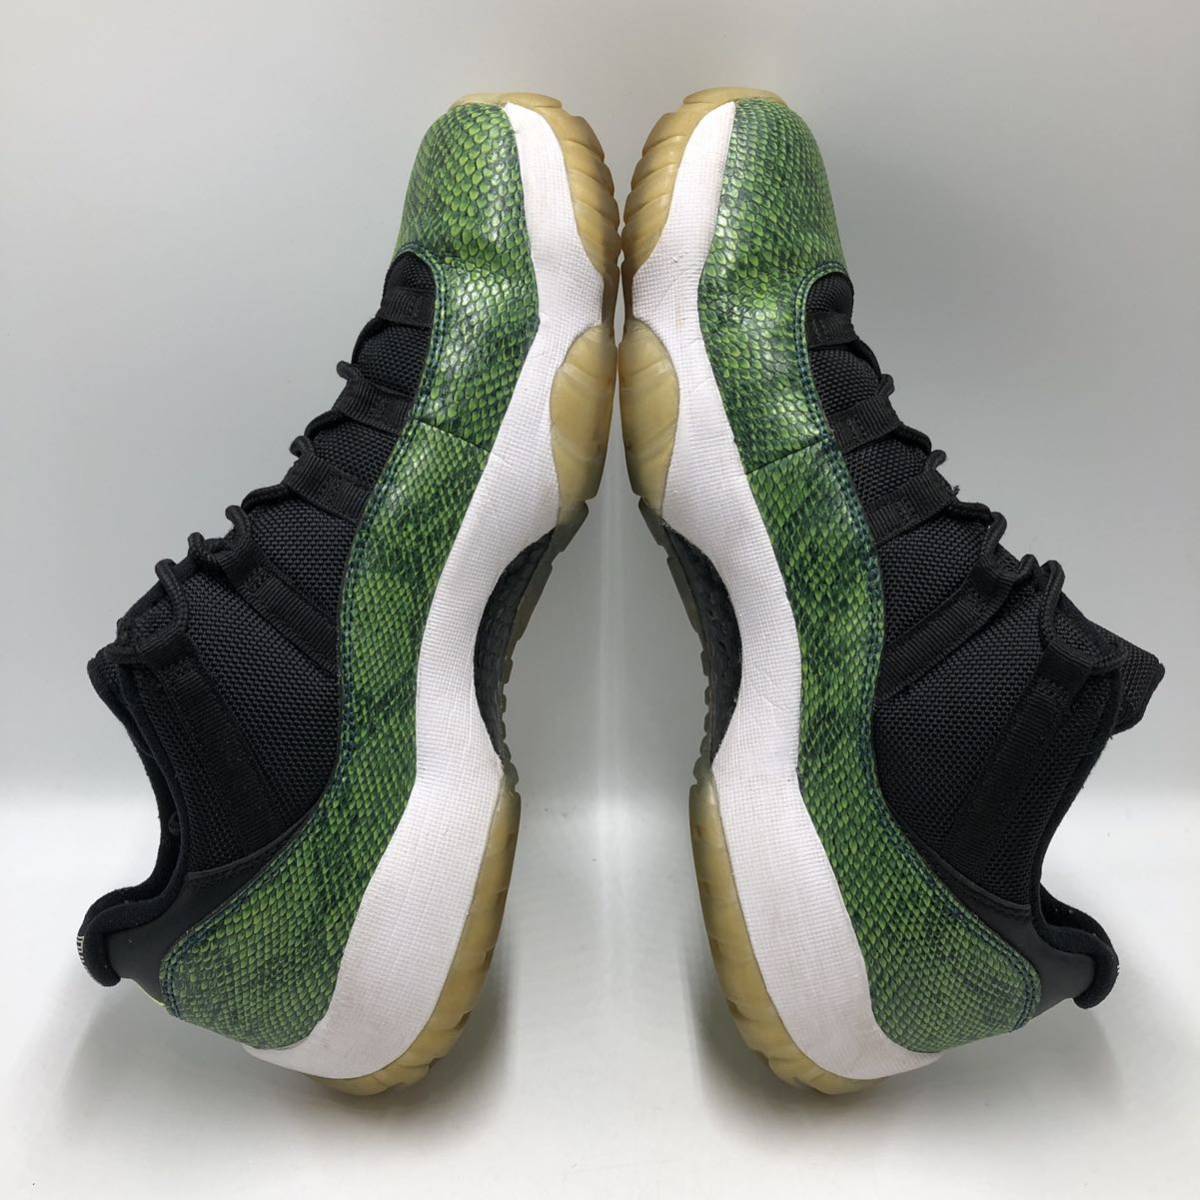 【28cm】Nike Air Jordan 11 Retro Low Green Snakeskin ナイキ エアジョーダン レトロ ロー グリーン スネークスキン (528895-033) 0027_画像6